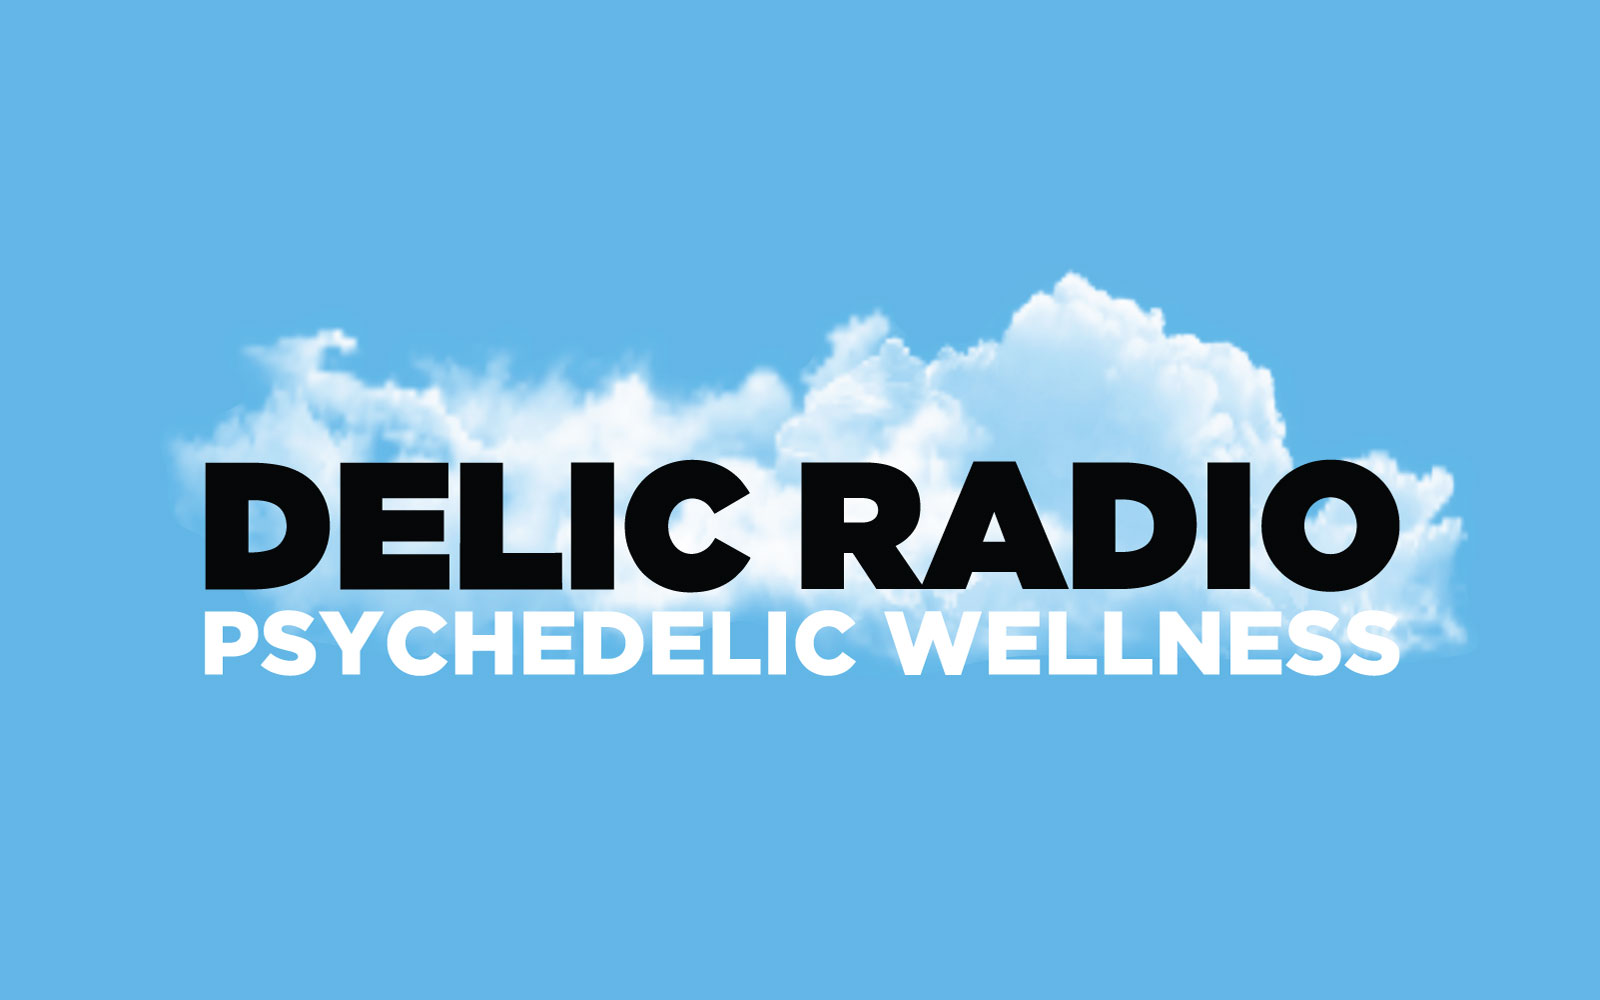 Delic Radio: Ryan Munevar on Legalizing Psilocybin